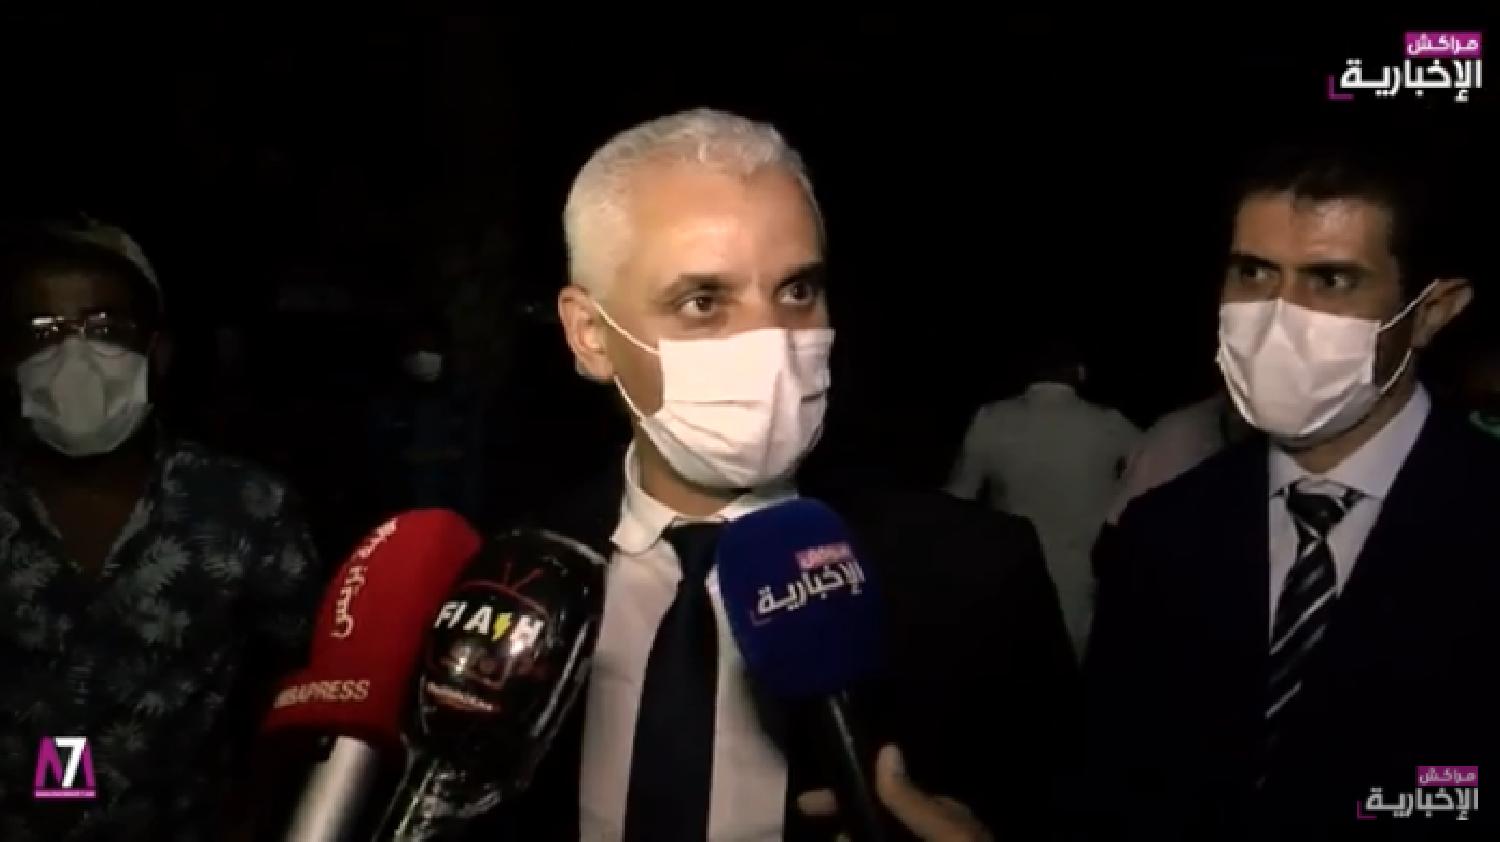 فيديو: وزير الصحة يكشف الخطة الاستعجالية لإنقاذ الوضع بمراكش